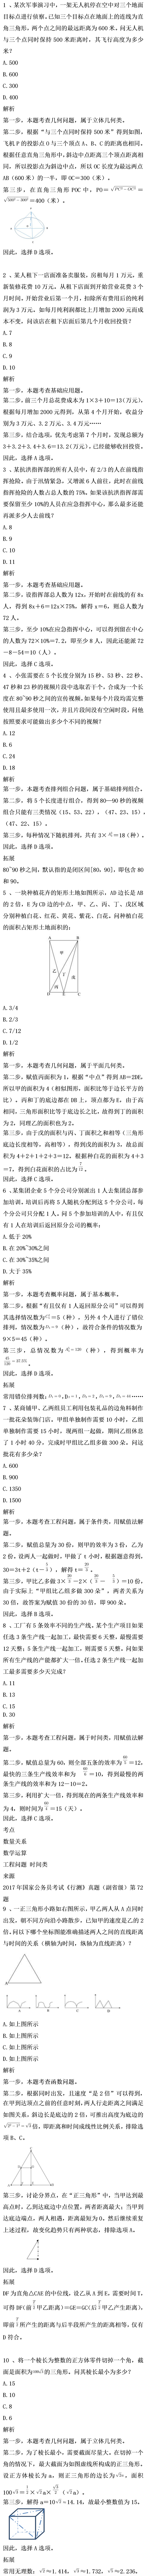 2020河南公务员考试每日一练解析(2月1日)